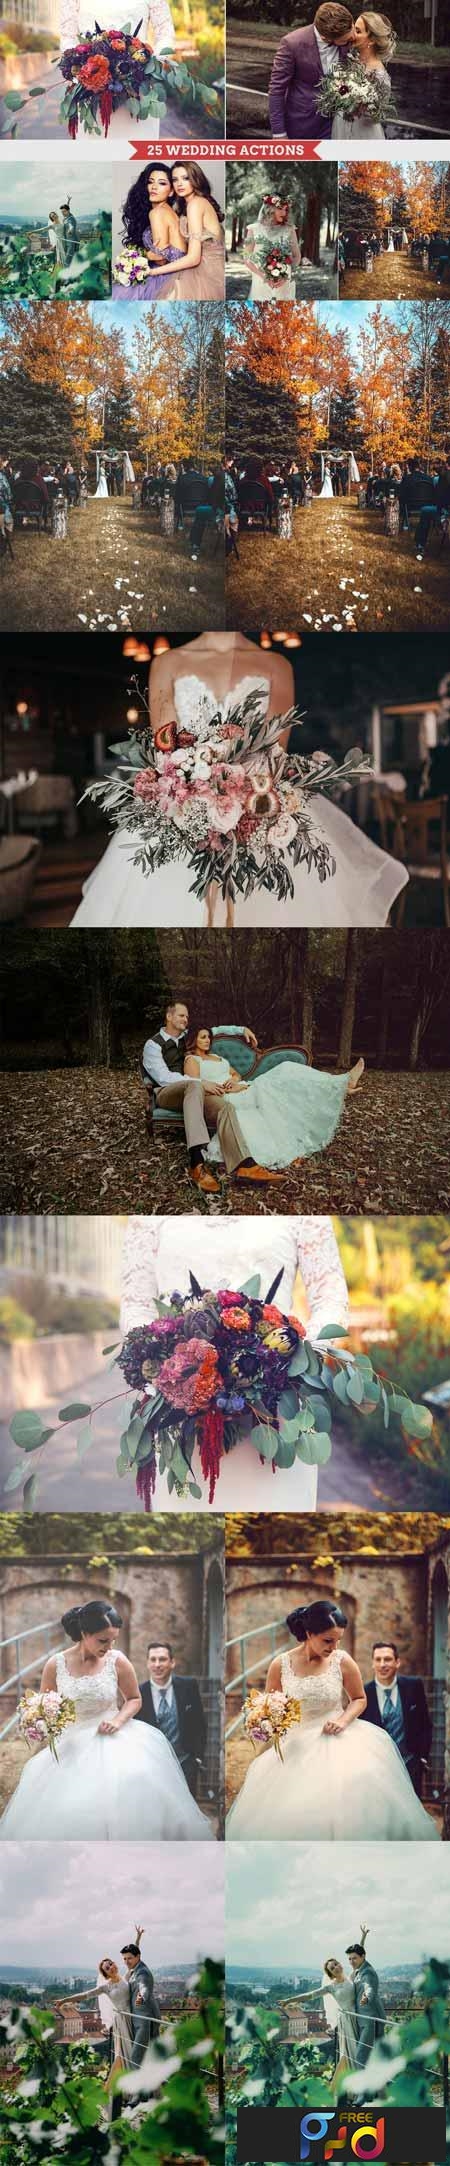 25 Wedding Photoshop Actions 3368313 1